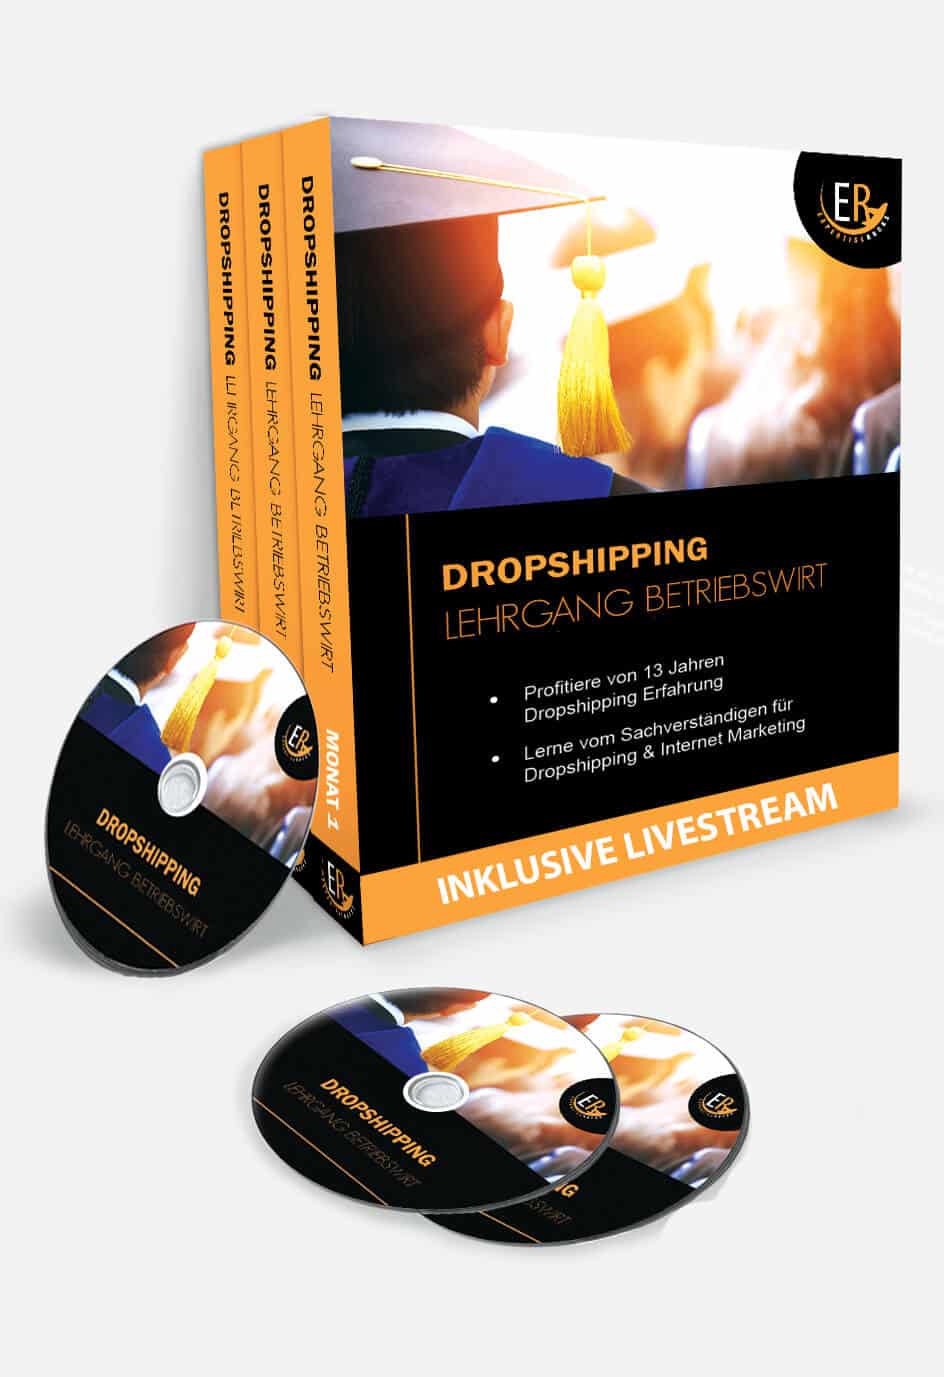 Dropshipping-Betriebswirt-Online-Kurs